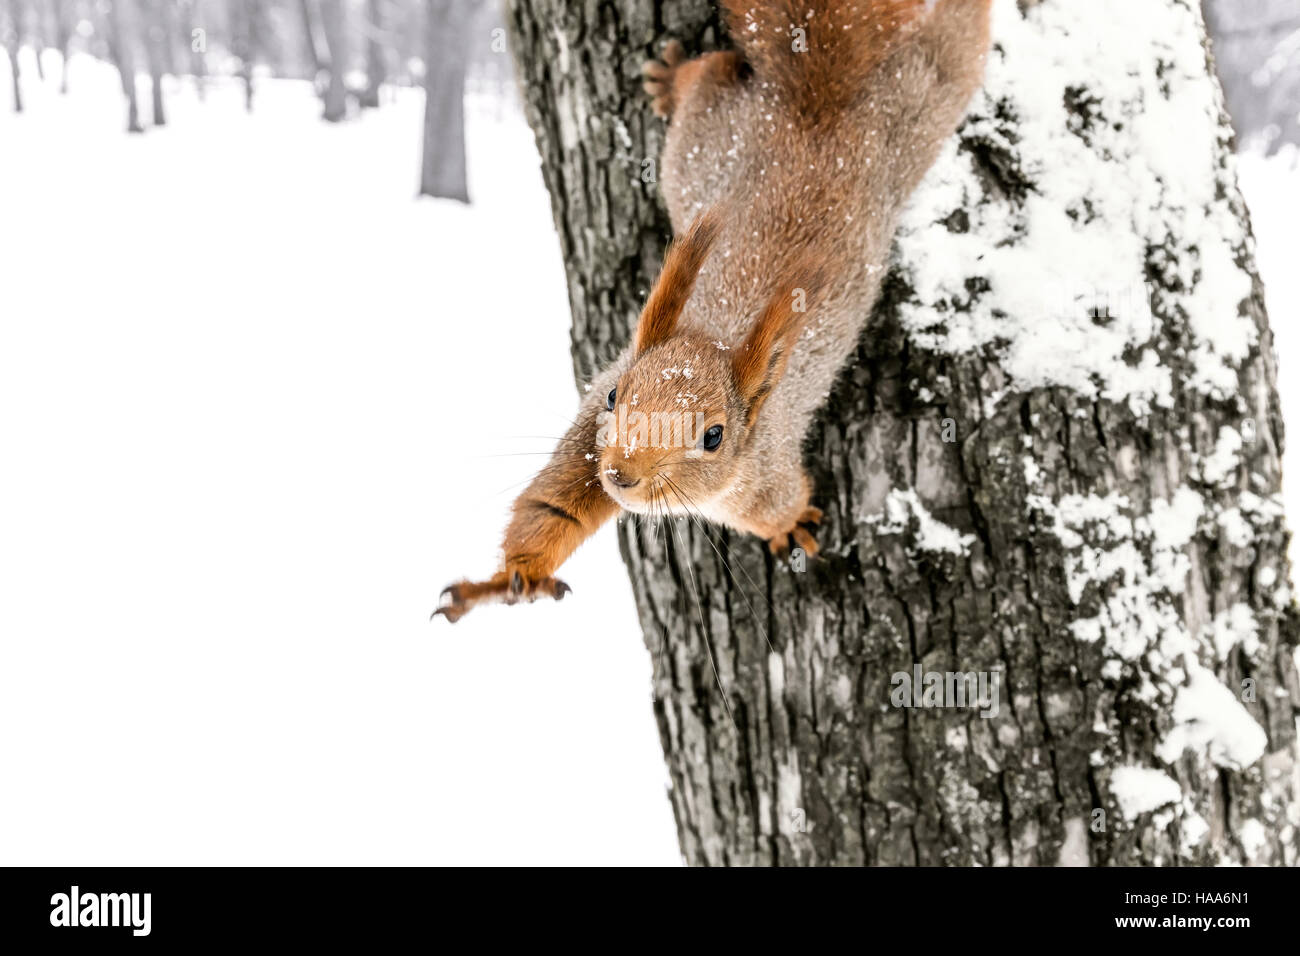 Poco gracioso con ardilla celebrada fuera paw sentados en troncos de árboles nevados Foto de stock